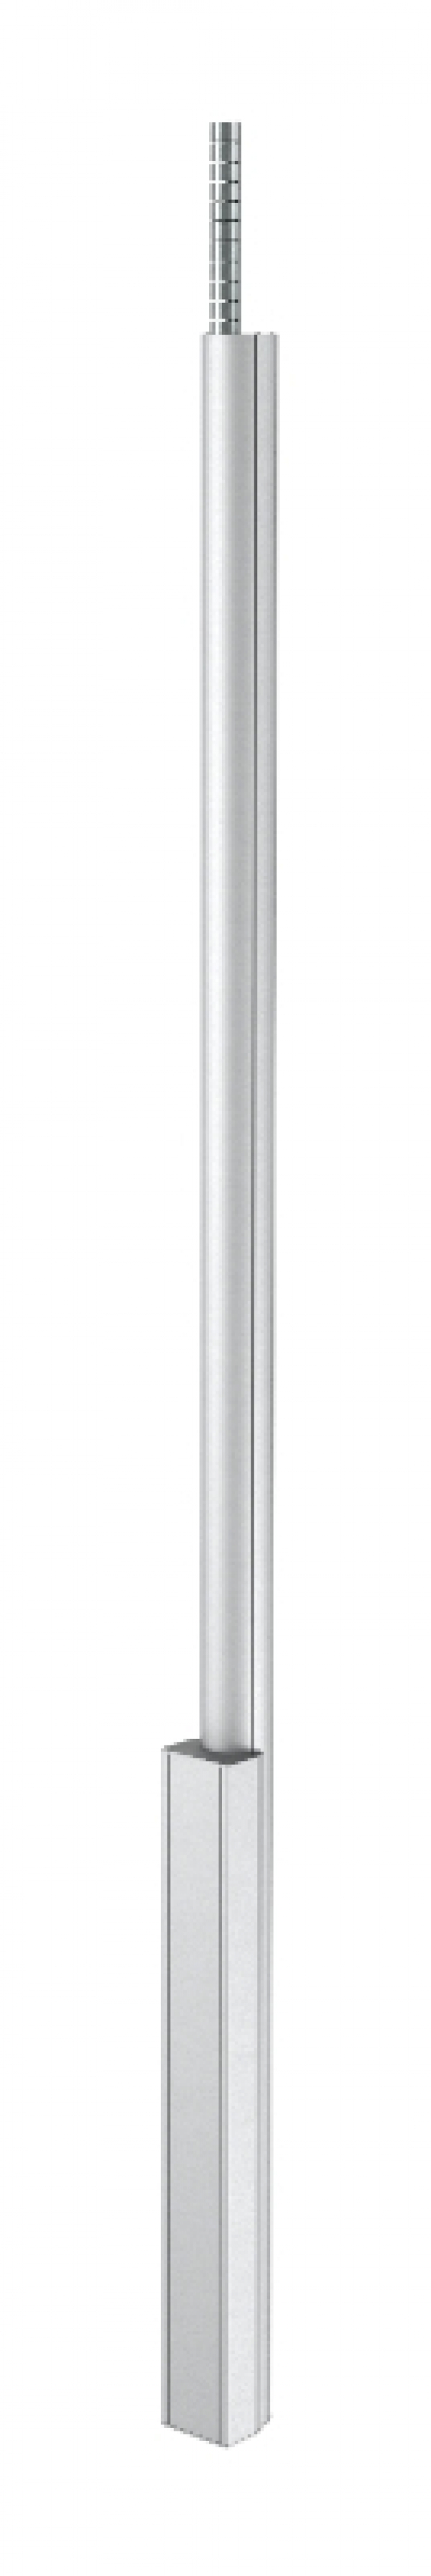 6289043 - OBO BETTERMANN Электромонтажная колонна 2,3-3,8 м 1-сторонняя 100x110x2300 мм (алюминий) (ISS110100FEL).